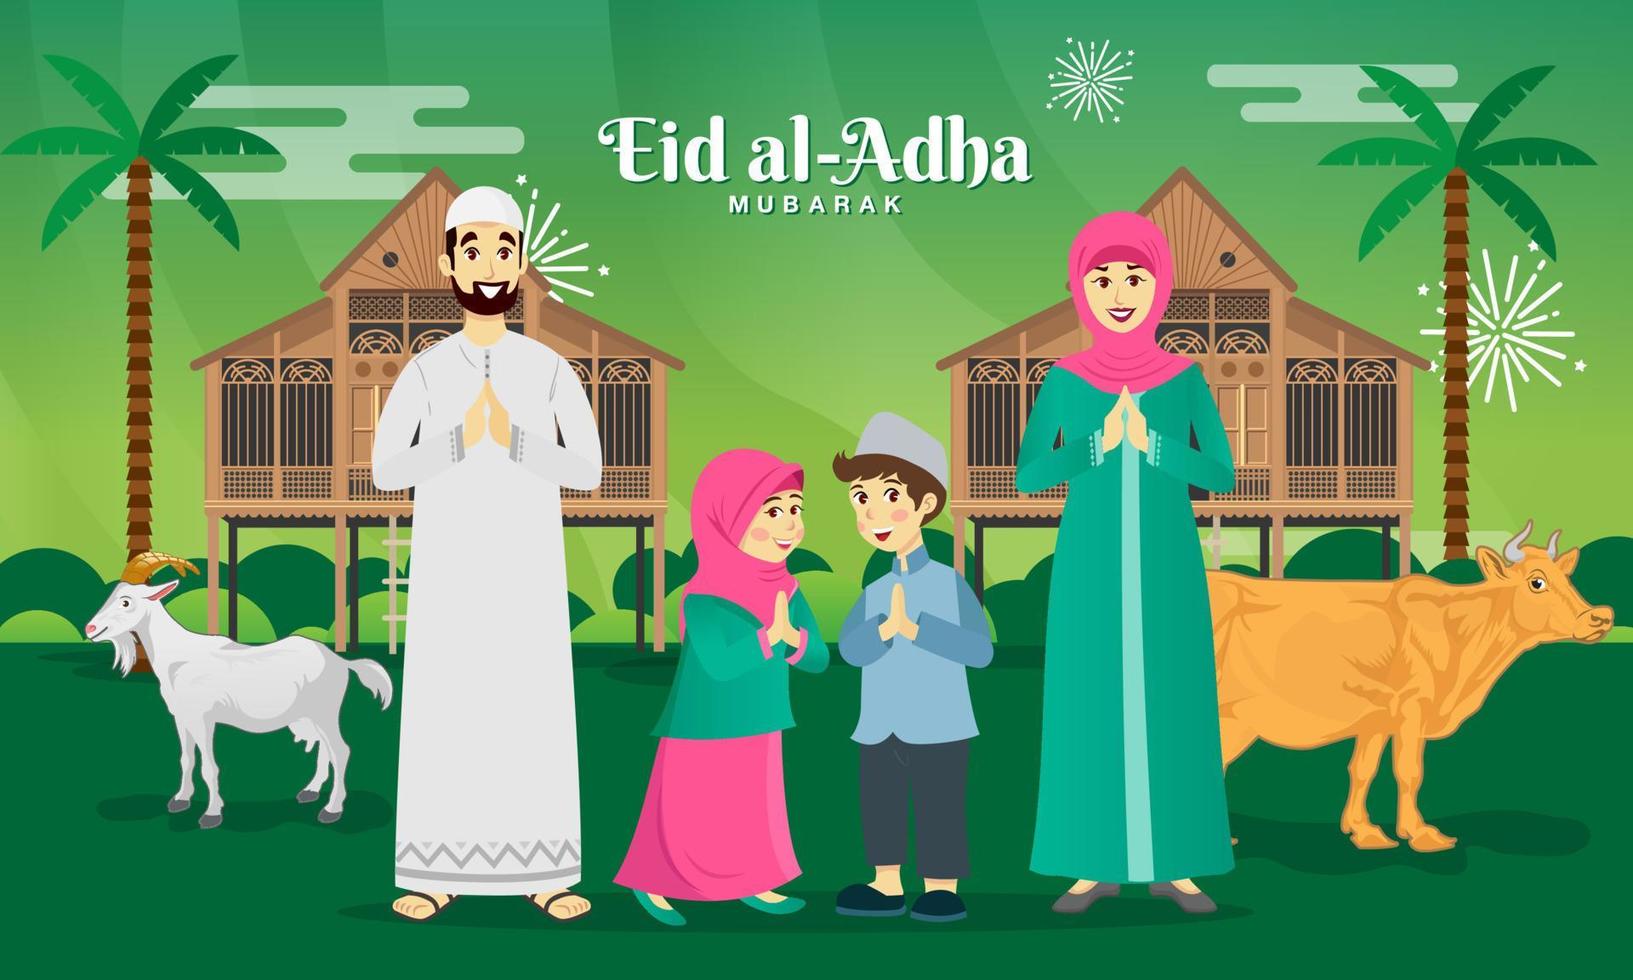 cartão de felicitações eid al adha. família muçulmana dos desenhos animados comemorando eid al adha com cabra, vaca e casa de aldeia tradicional malaia vetor